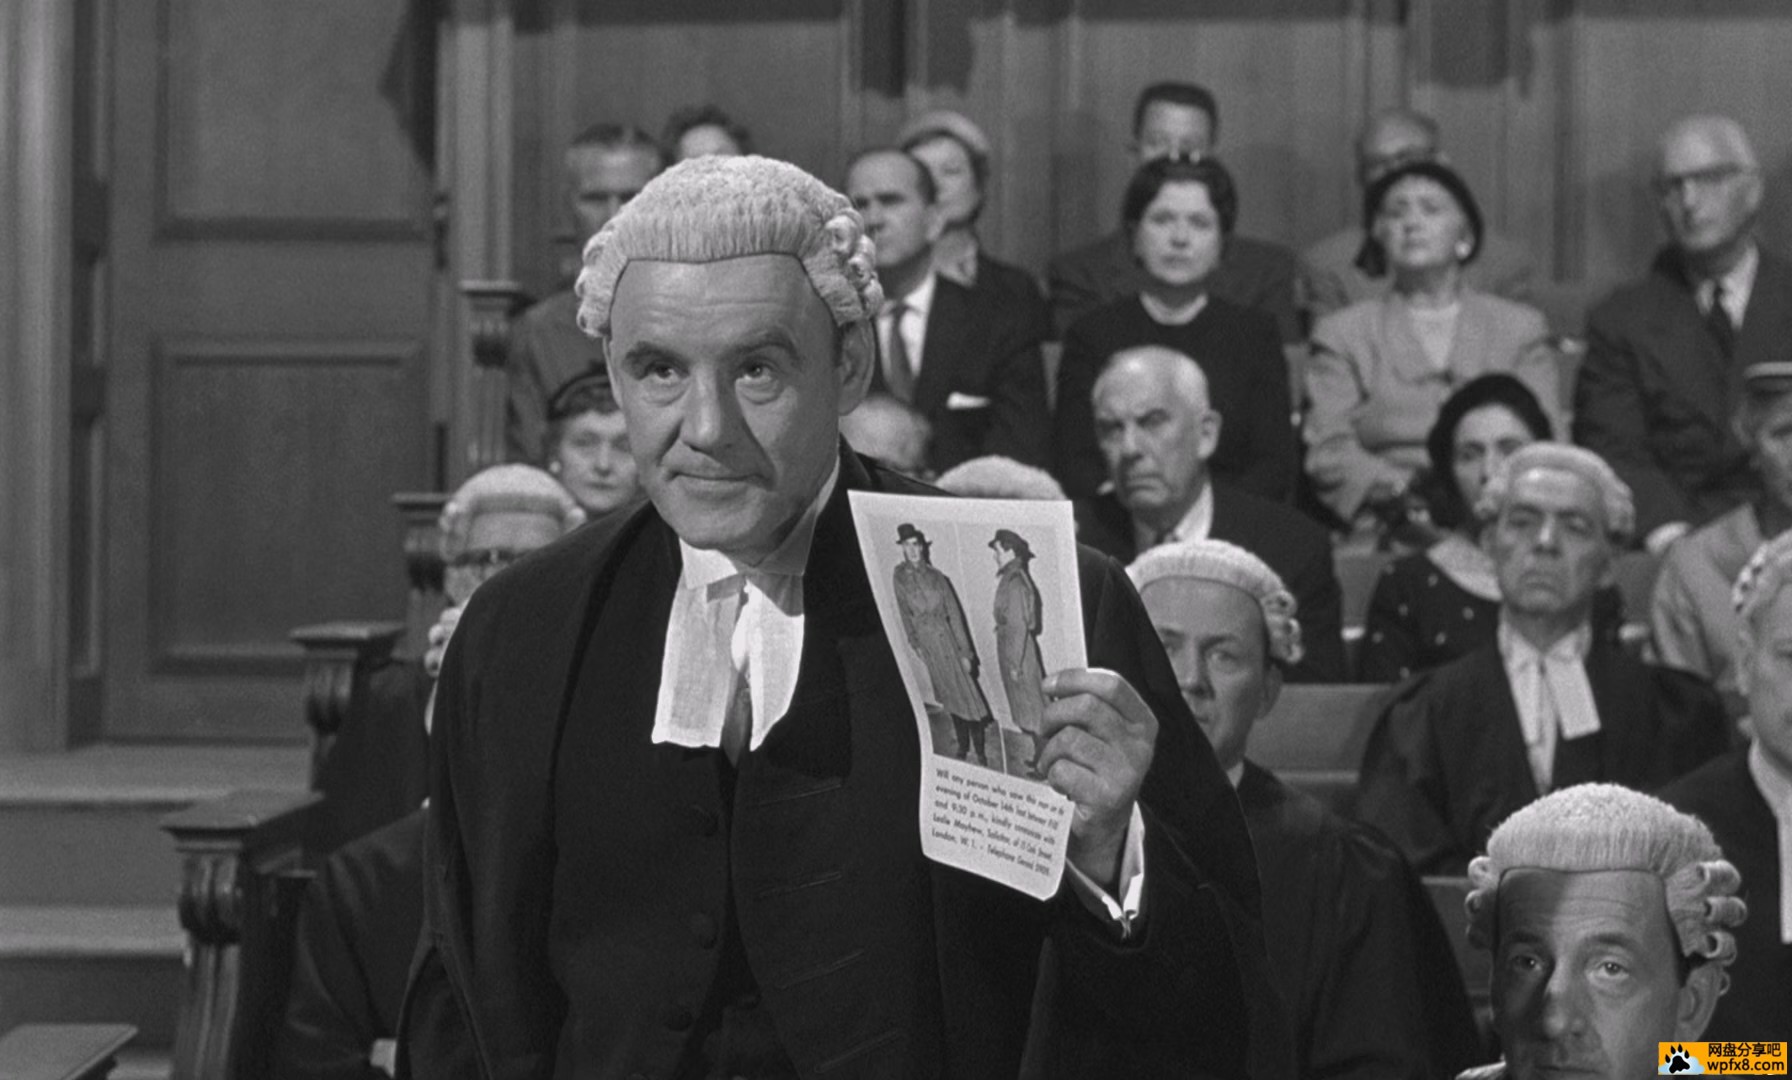 Witness.for.the.Prosecution.1957.1080p.BluRay.x265.mkv_012354.947.jpg